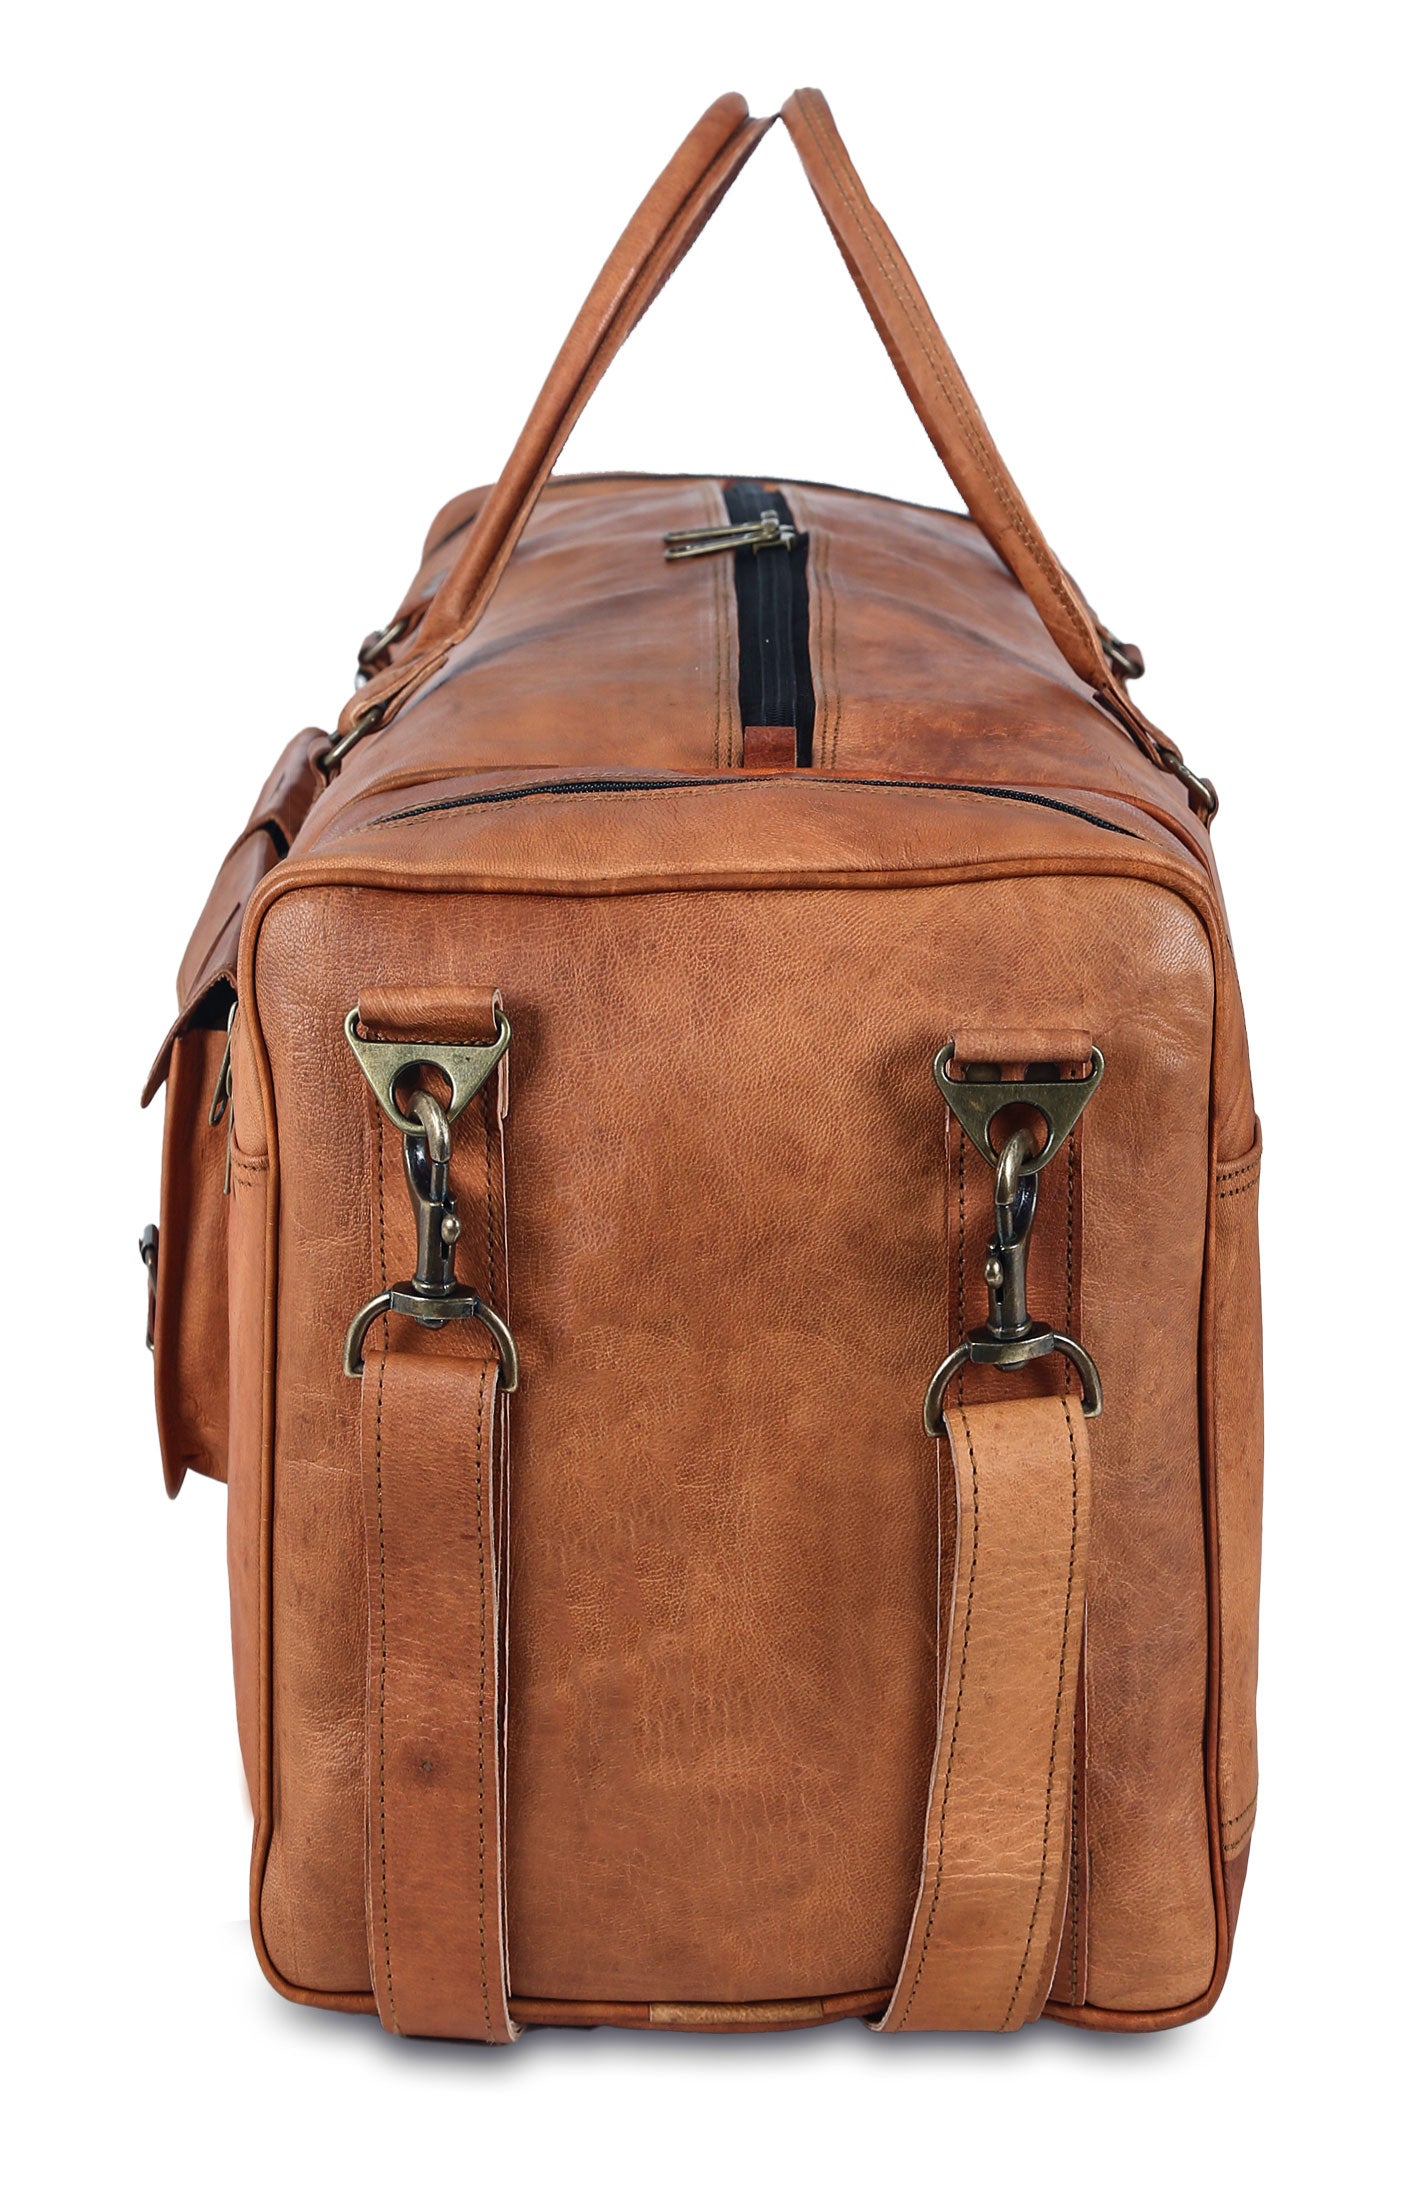 Leather Duffle Bag Weekender Bag Travel Bag Men Overnight Bag Large  Capacity Tote Duffel Bag